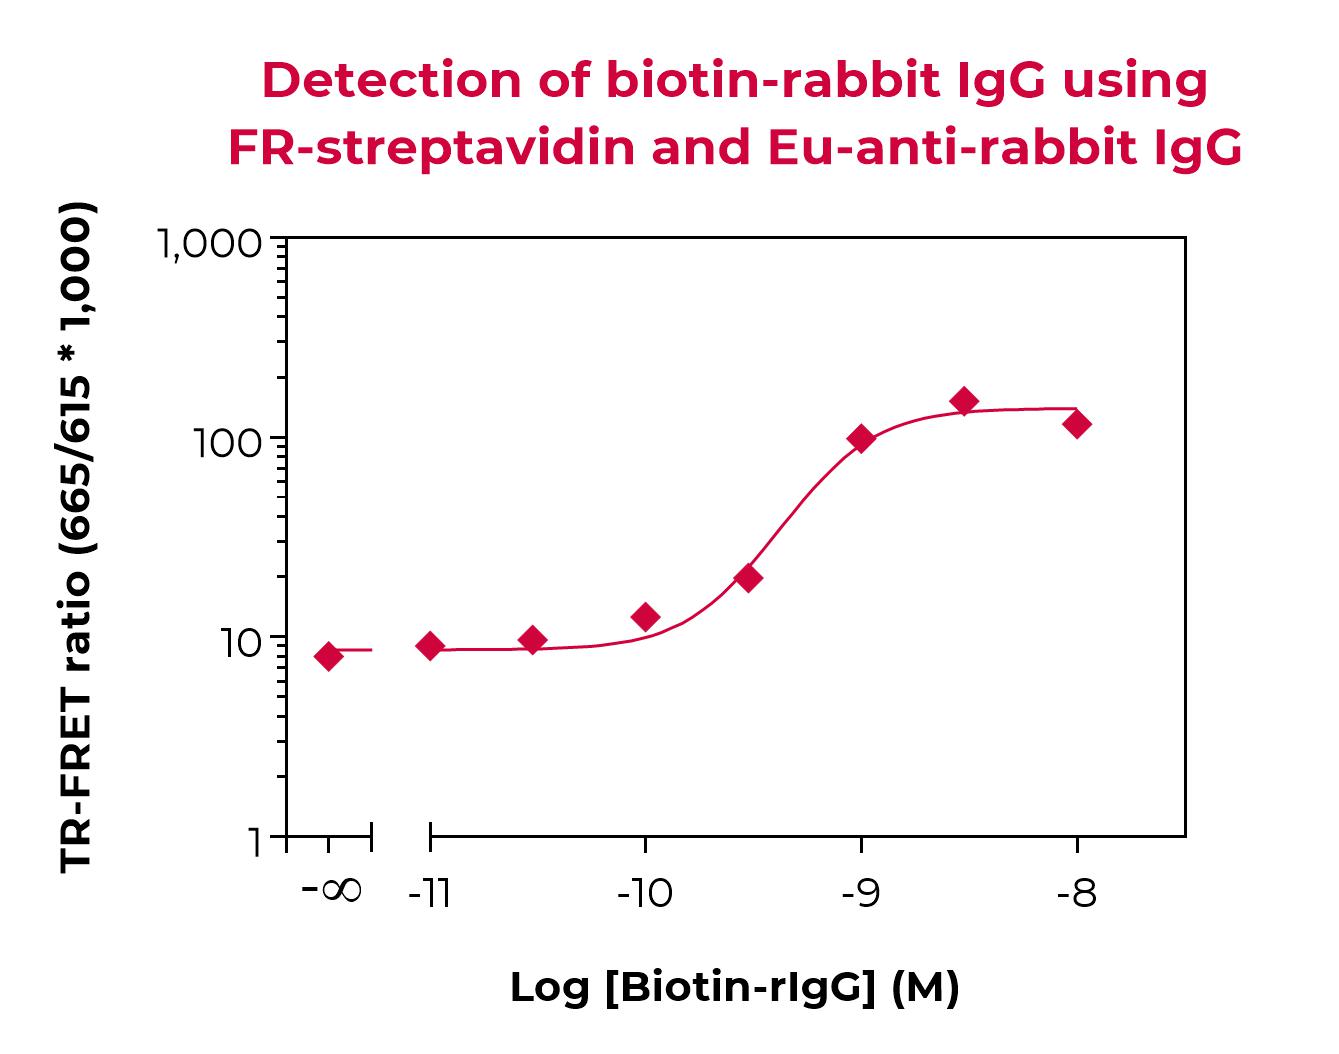 Eu-anti-rabbit IgG validation